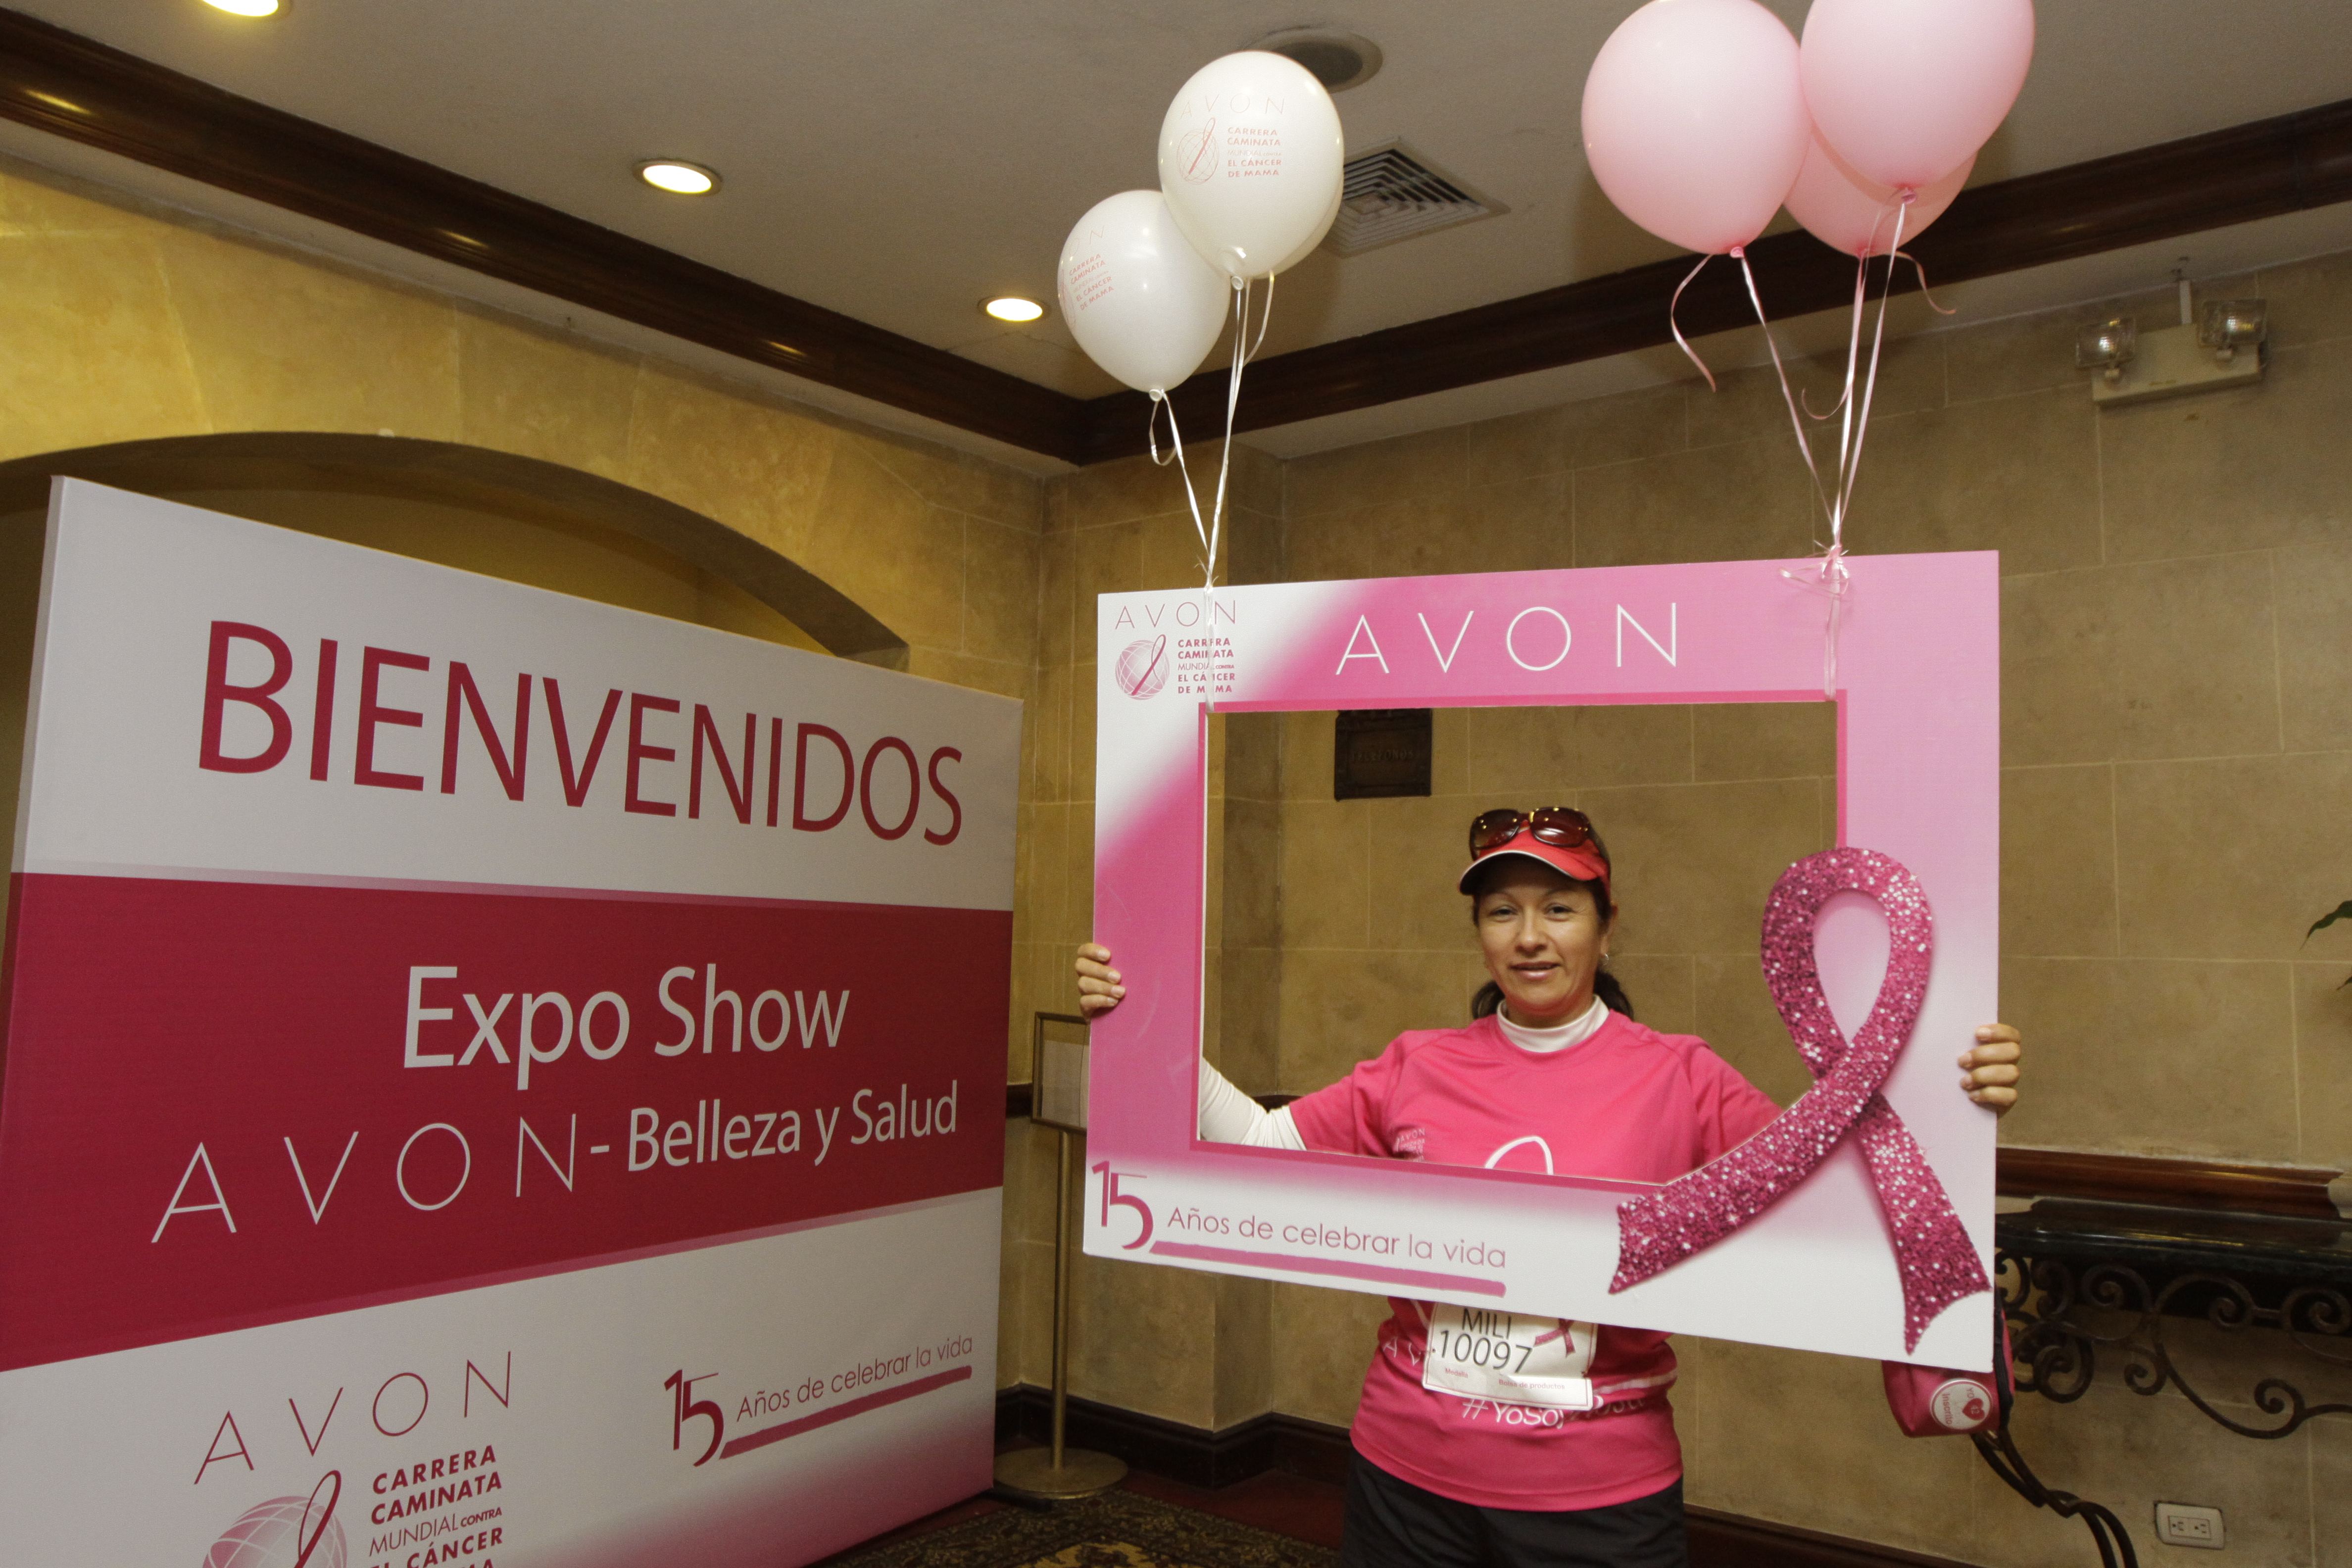 Avon invita a la Expo Show Avon Belleza y Salud Carrera Caminata Avon